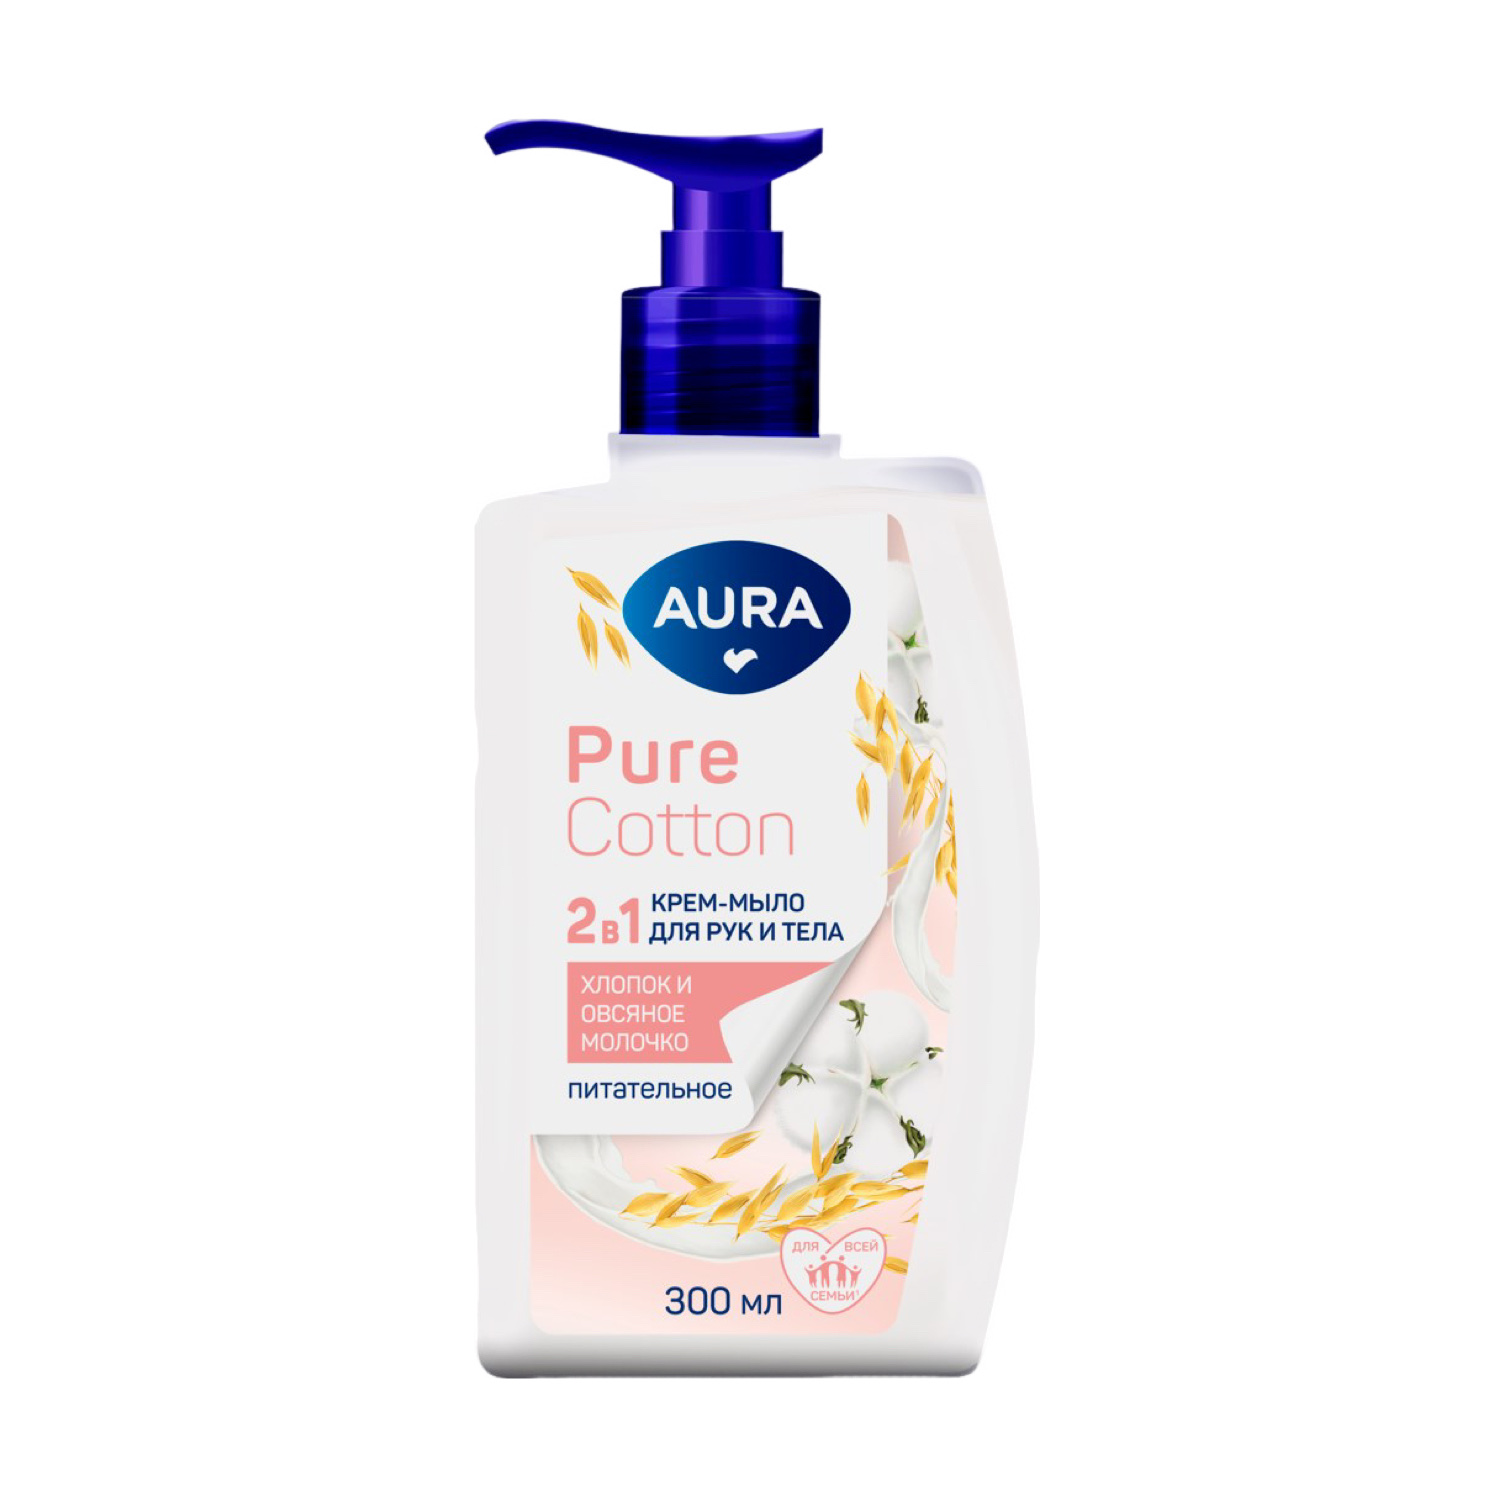 AURA Pure Cotton Крем-Мыло 2в1 для Рук и Тела Хлопок/Овсяное молочко 300мл